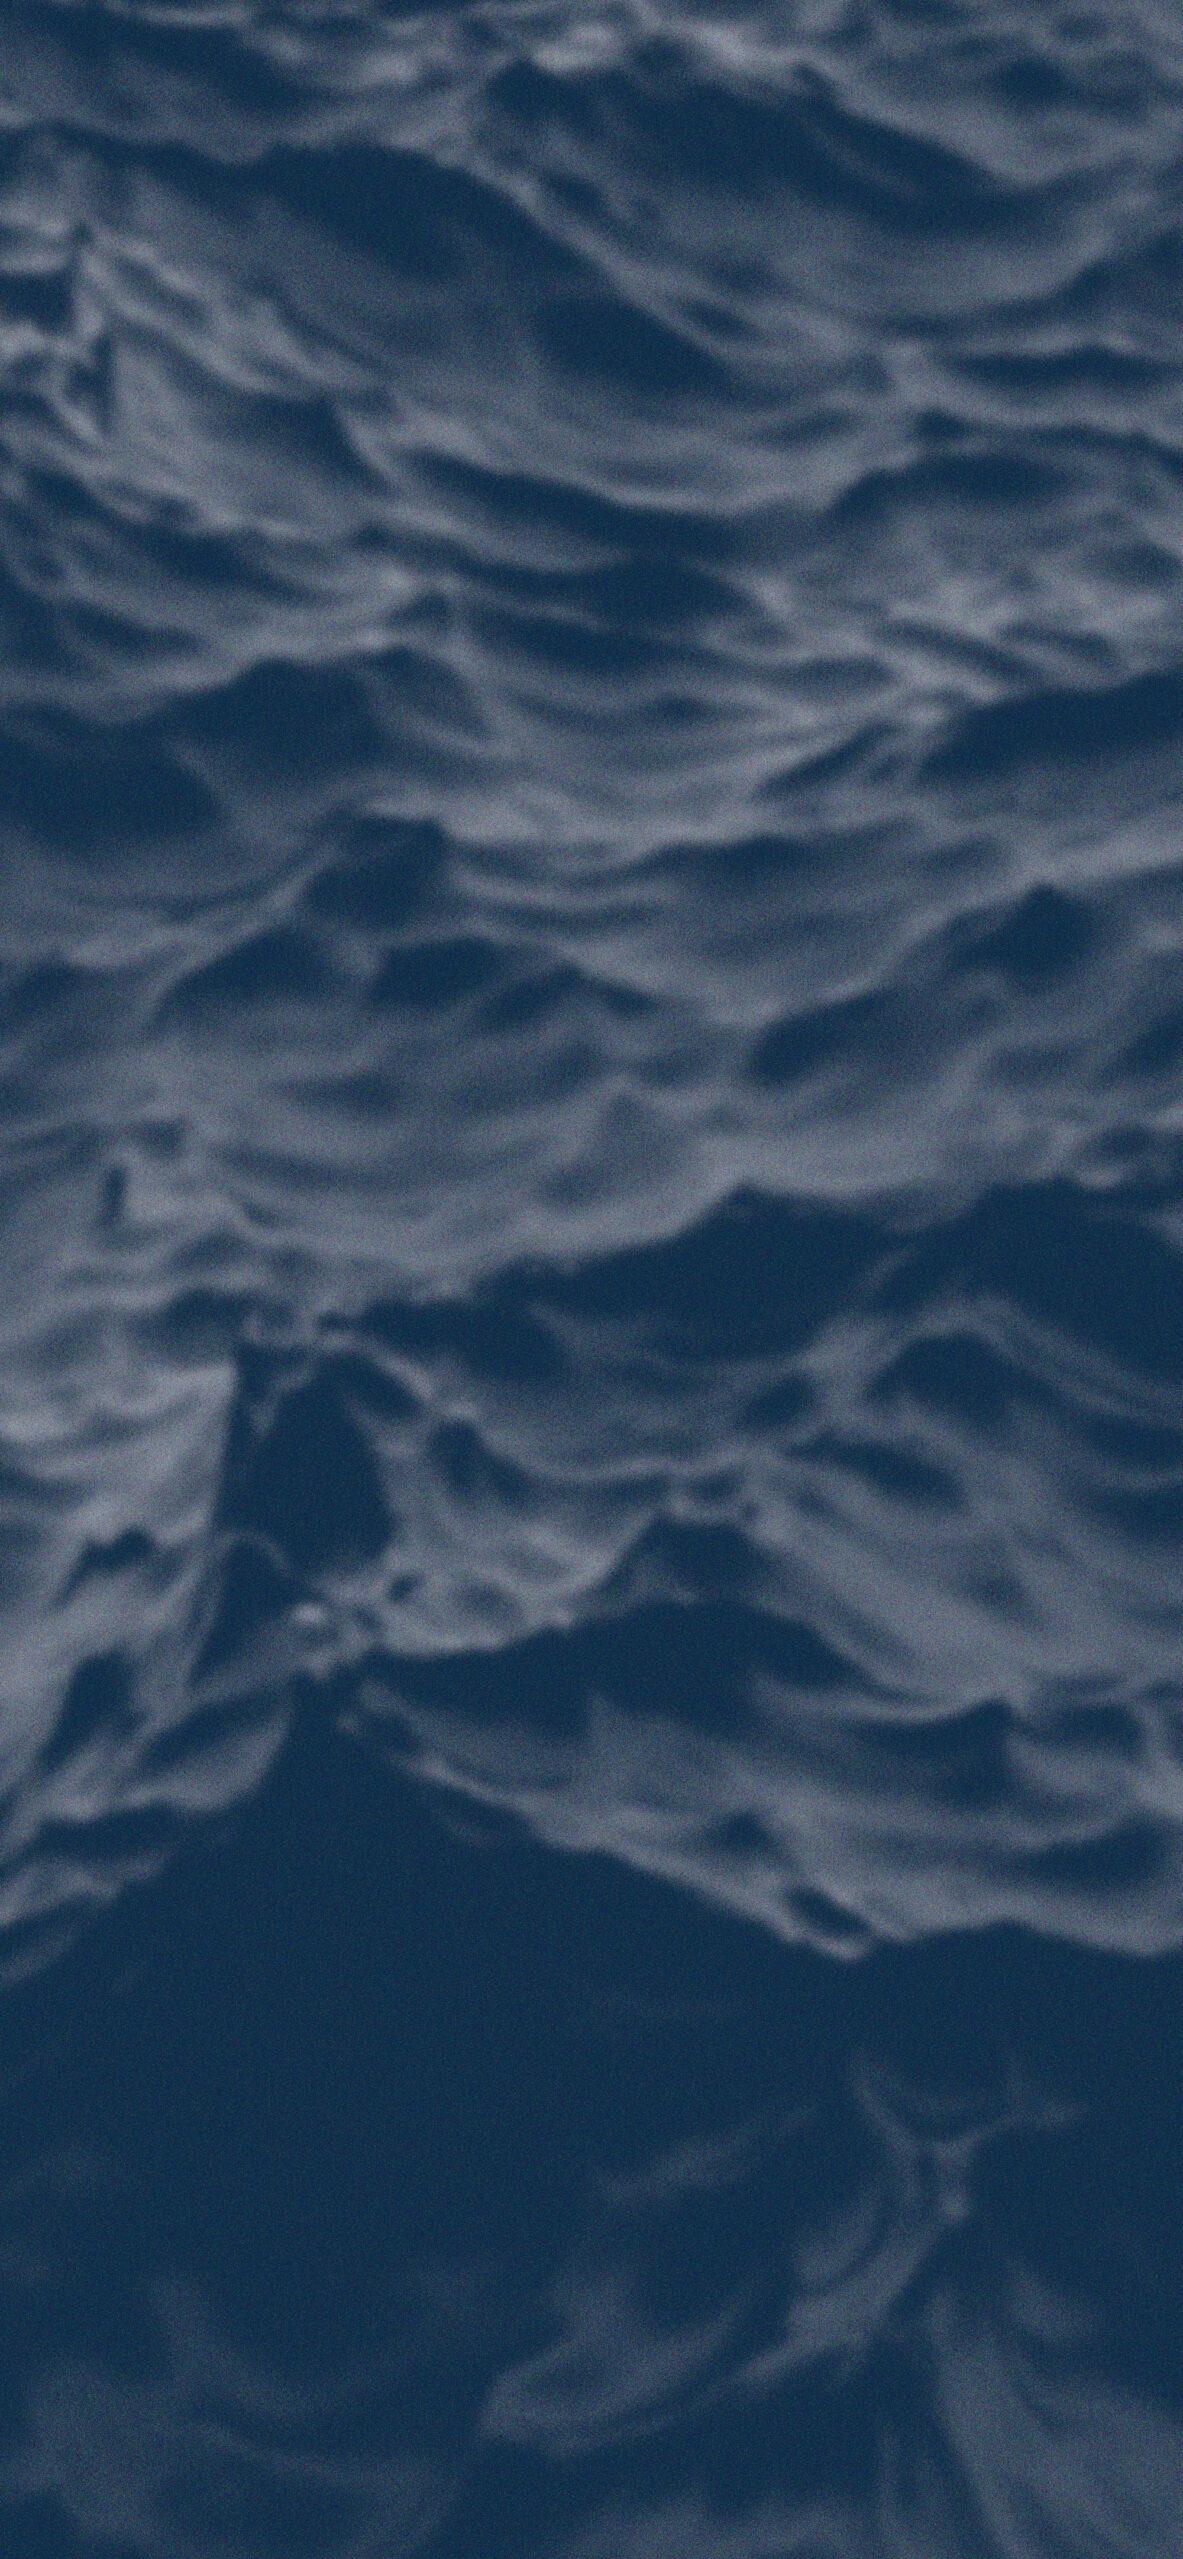 Free download Ocean Waves Dark Blue Wallpapers iPhone Aesthetic Blue ...